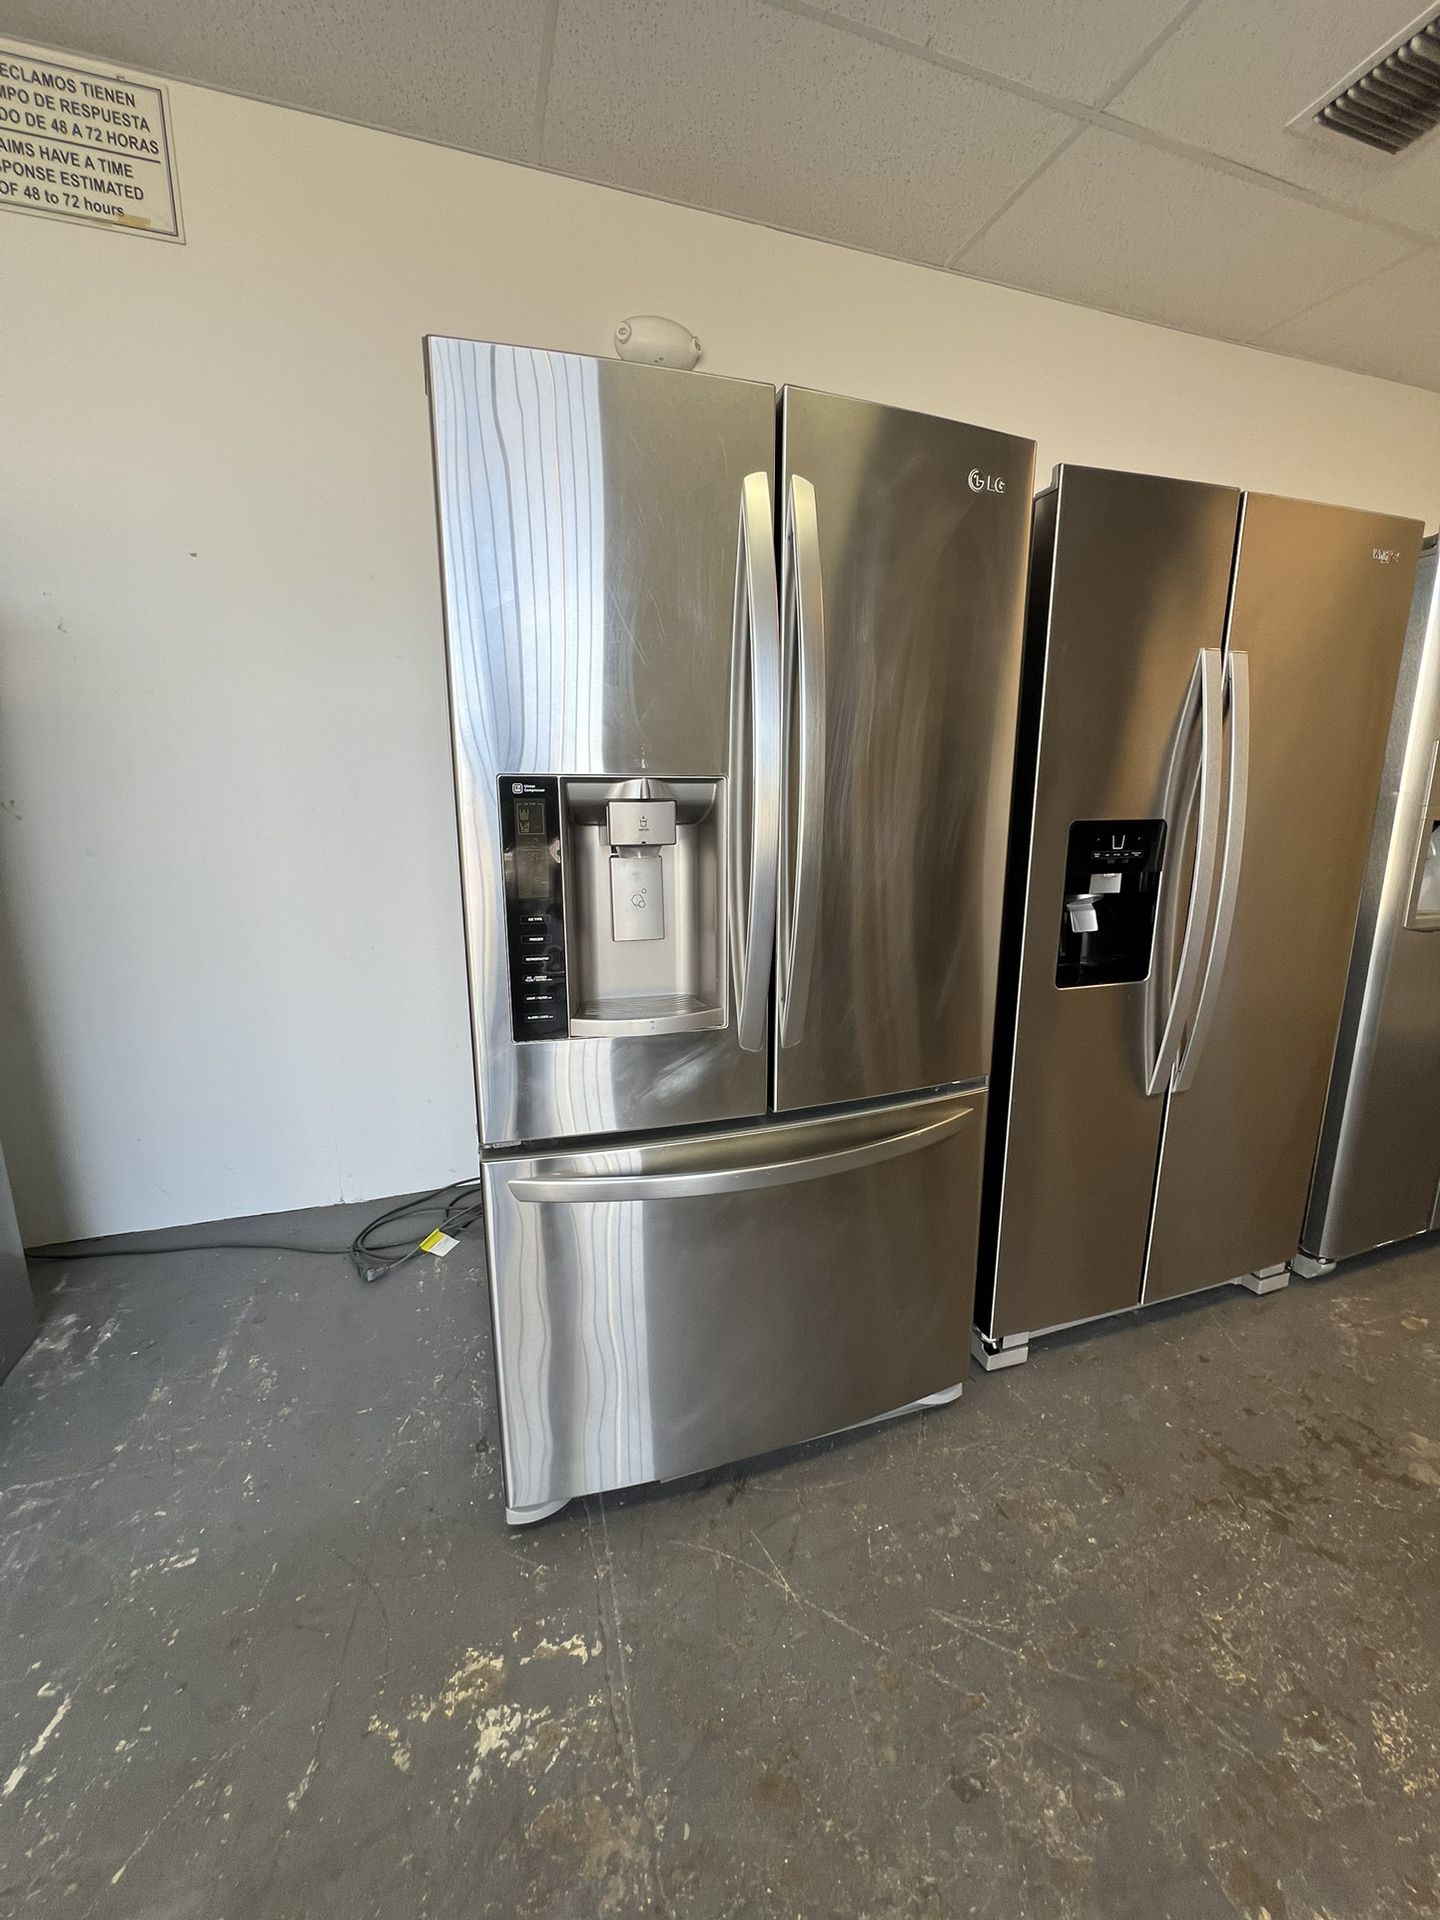 Refrigerator 3 Doors 36 “ Wide 